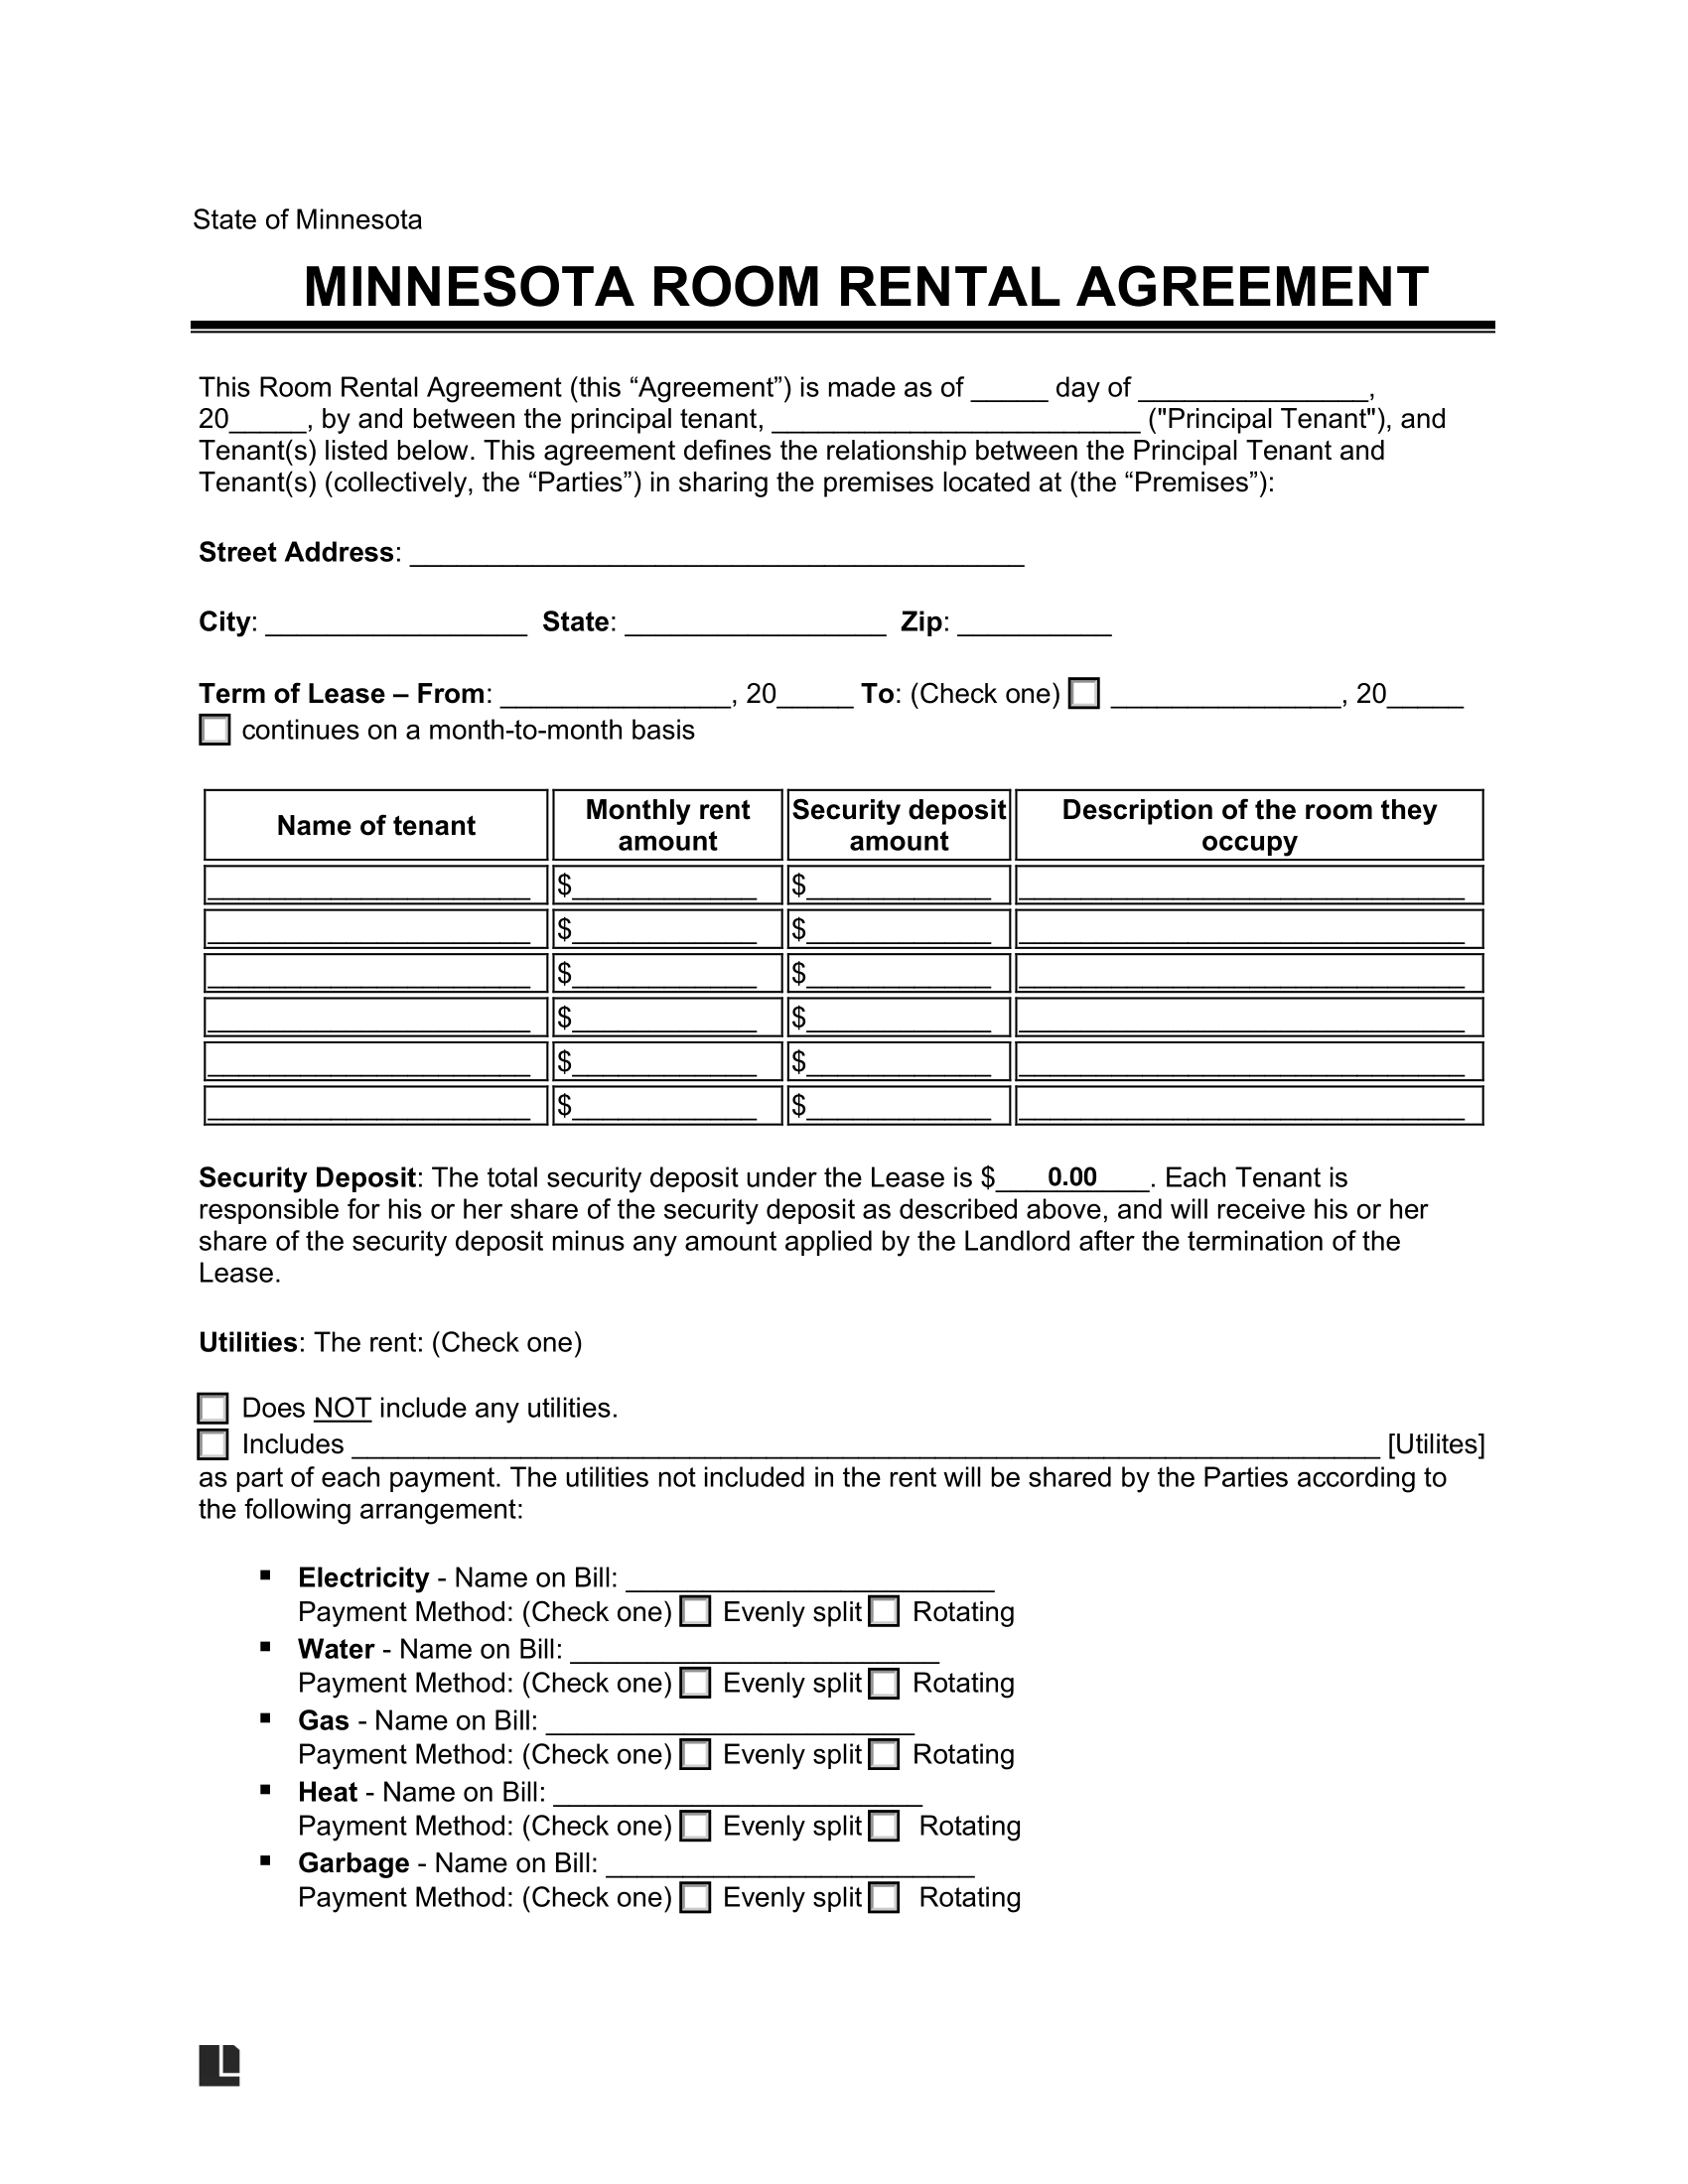 Minnesota Room Rental Agreement